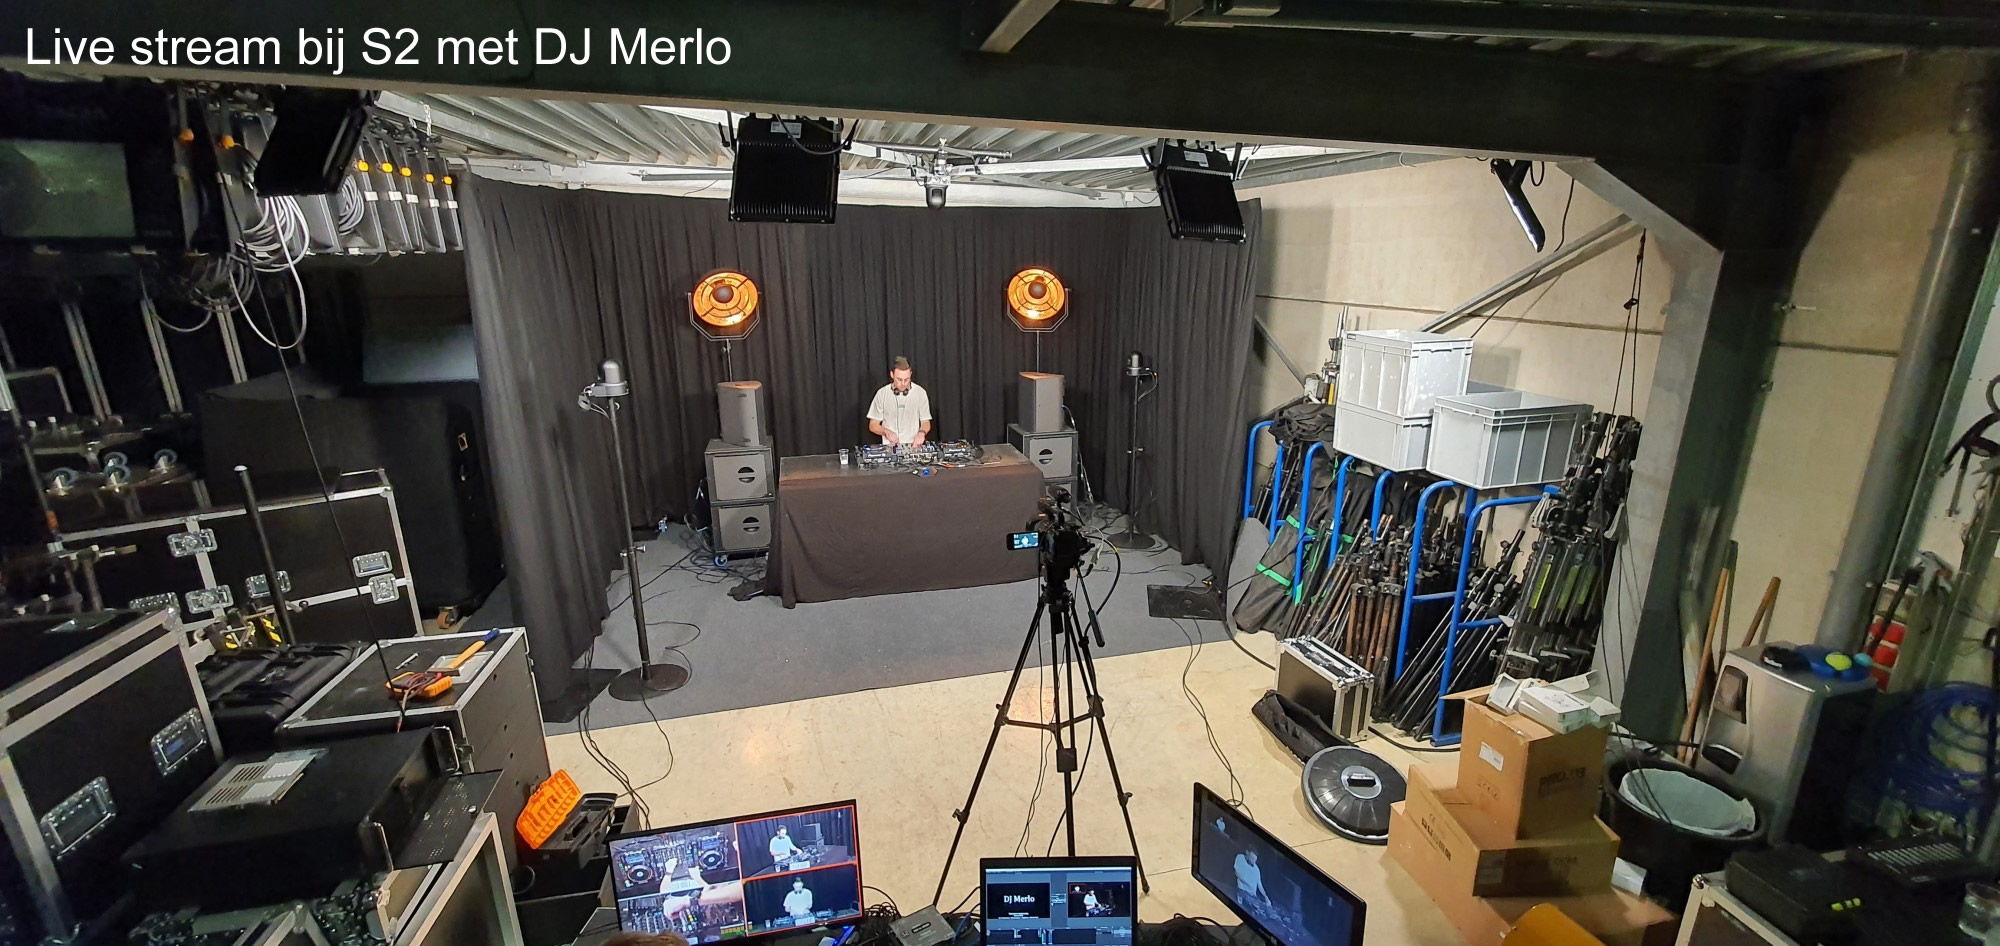 DJ MERLO BIJ S2